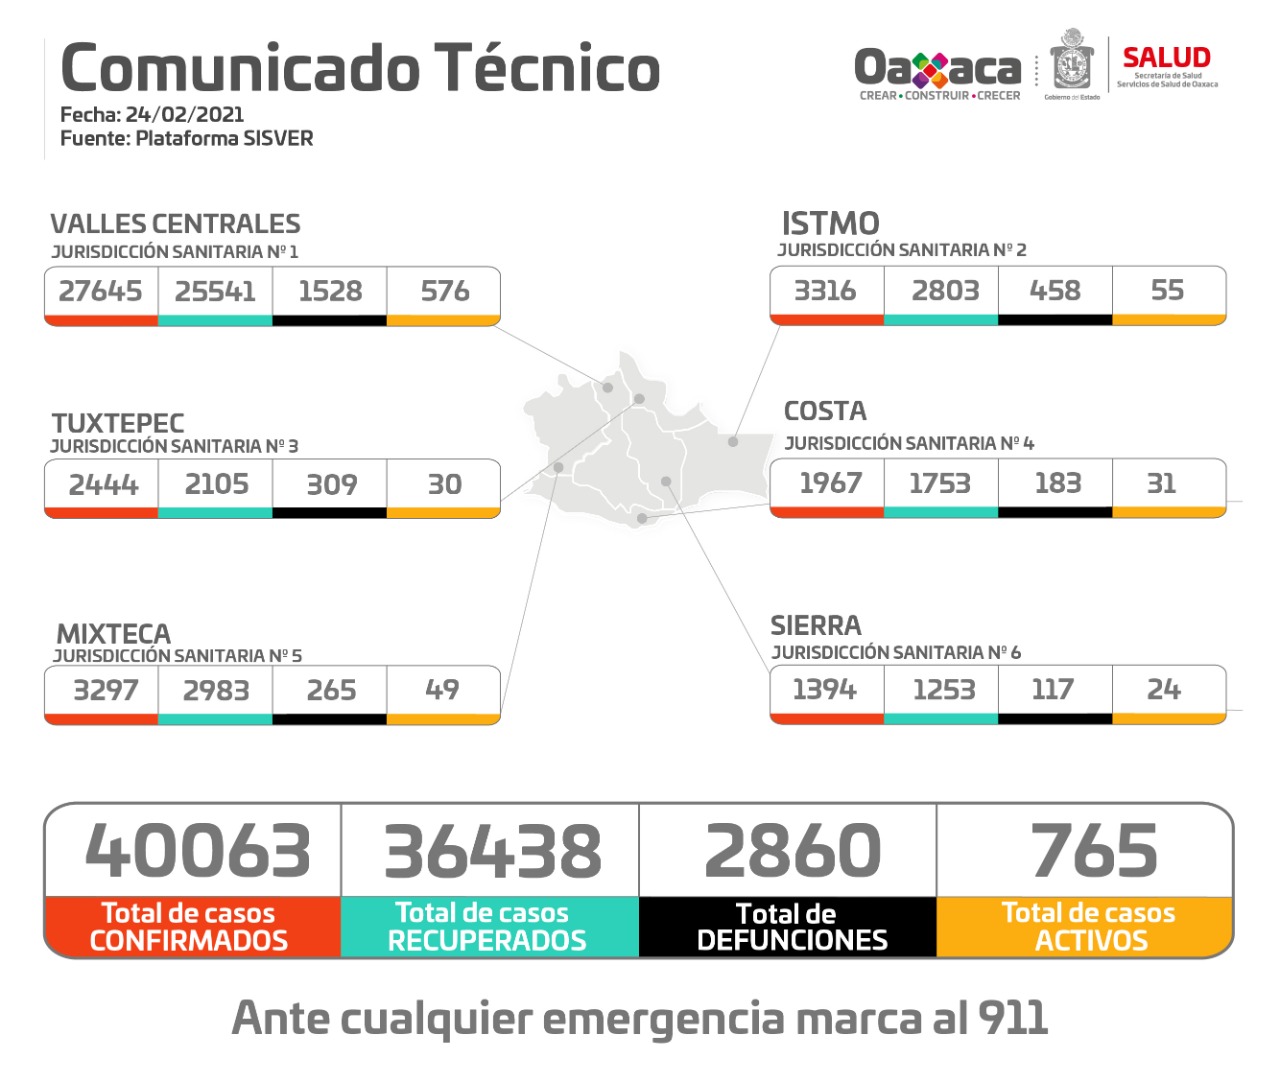 Cuantifican 40 mil 063 casos positivos y dos mil 860 muertes por Covid-19 en Oaxaca